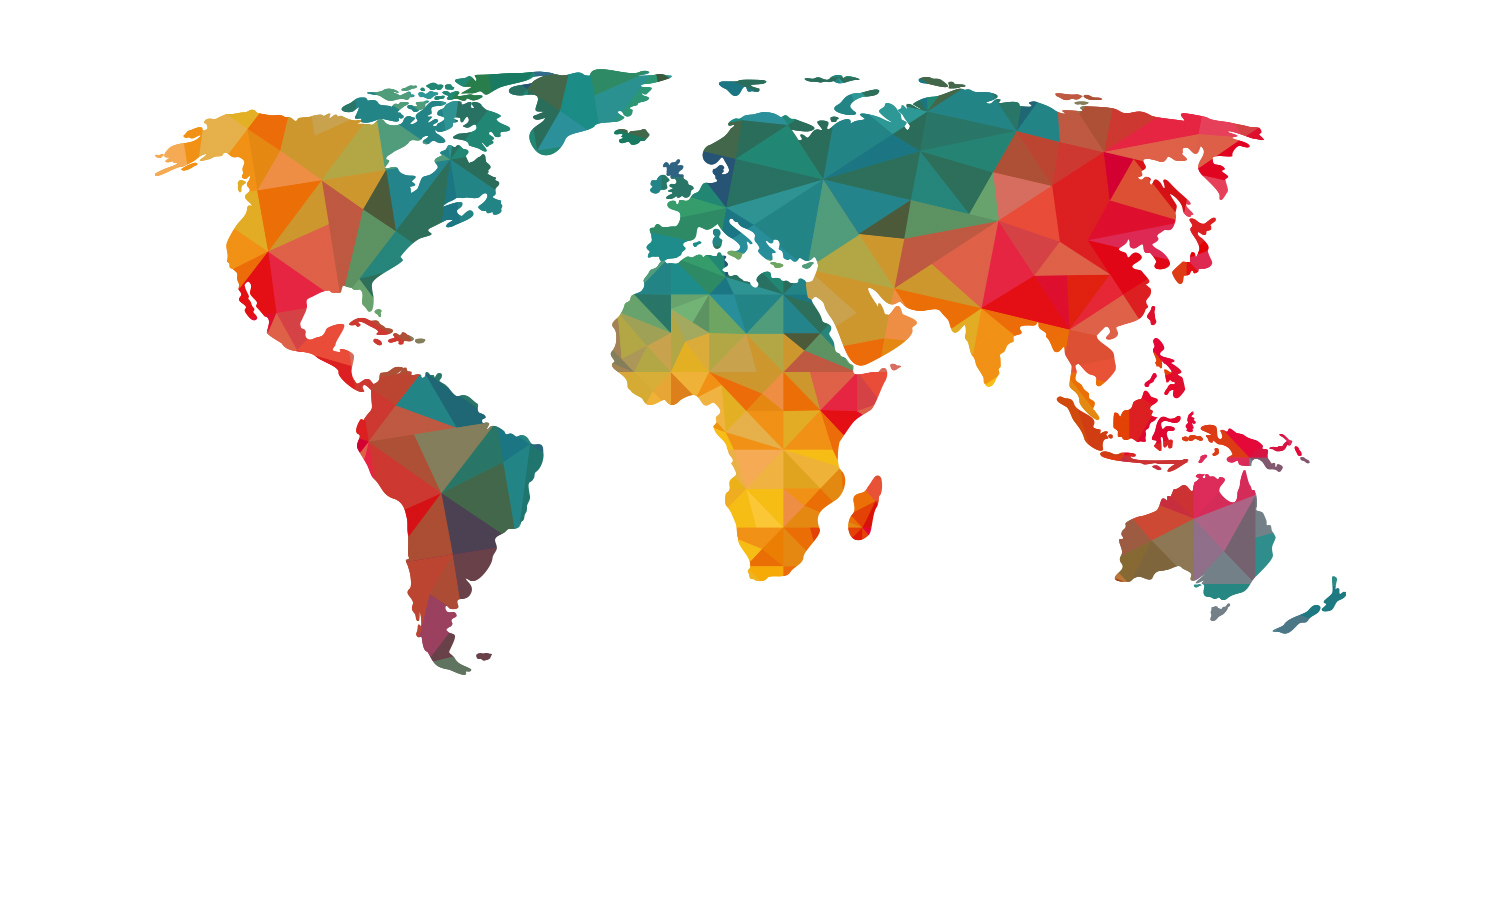 Ten countries. Континенты цветные.